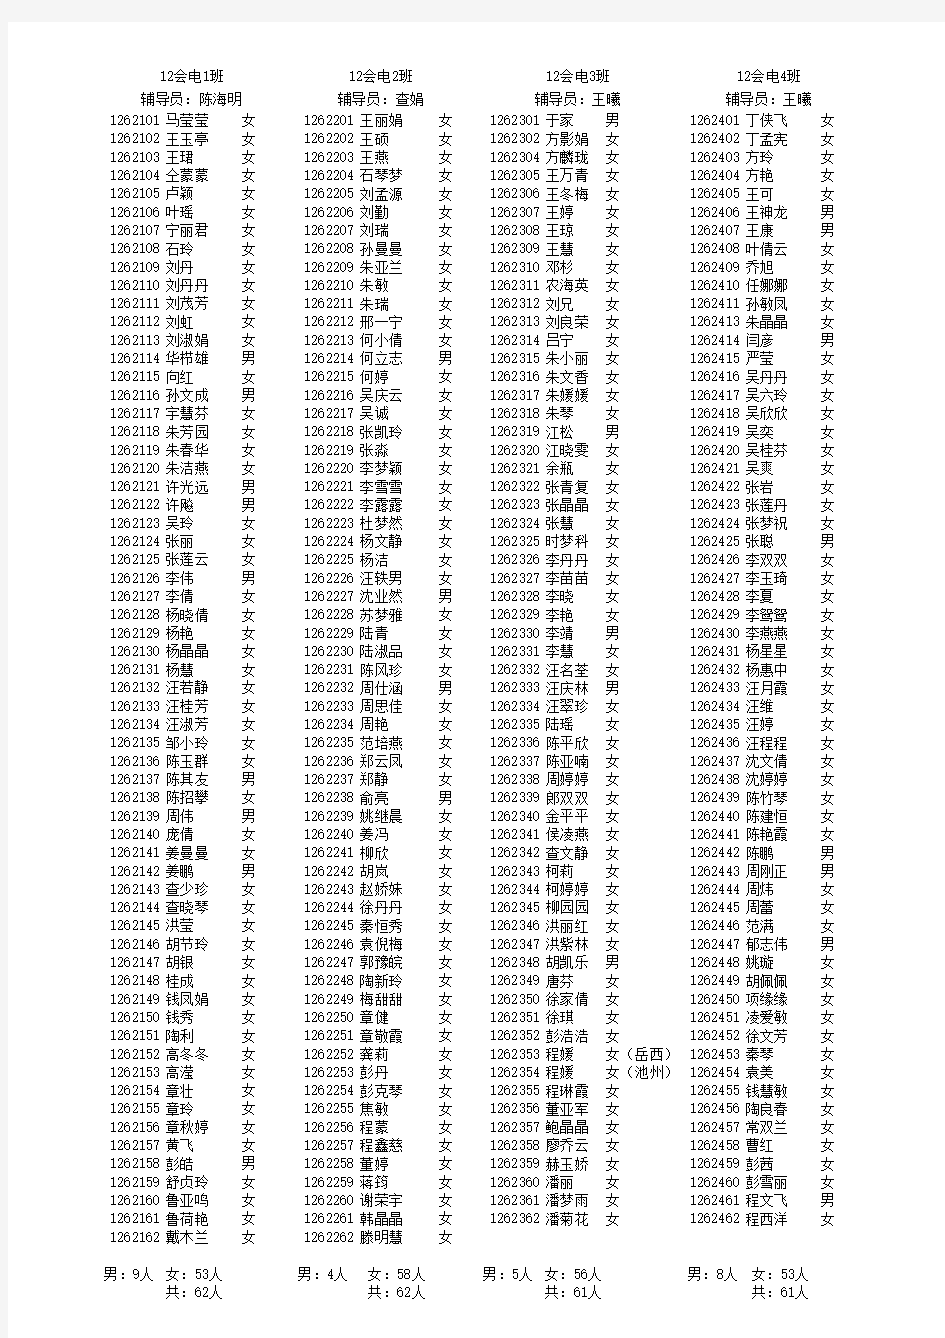 2012级分班级学生名单(共525人)-Sheet1